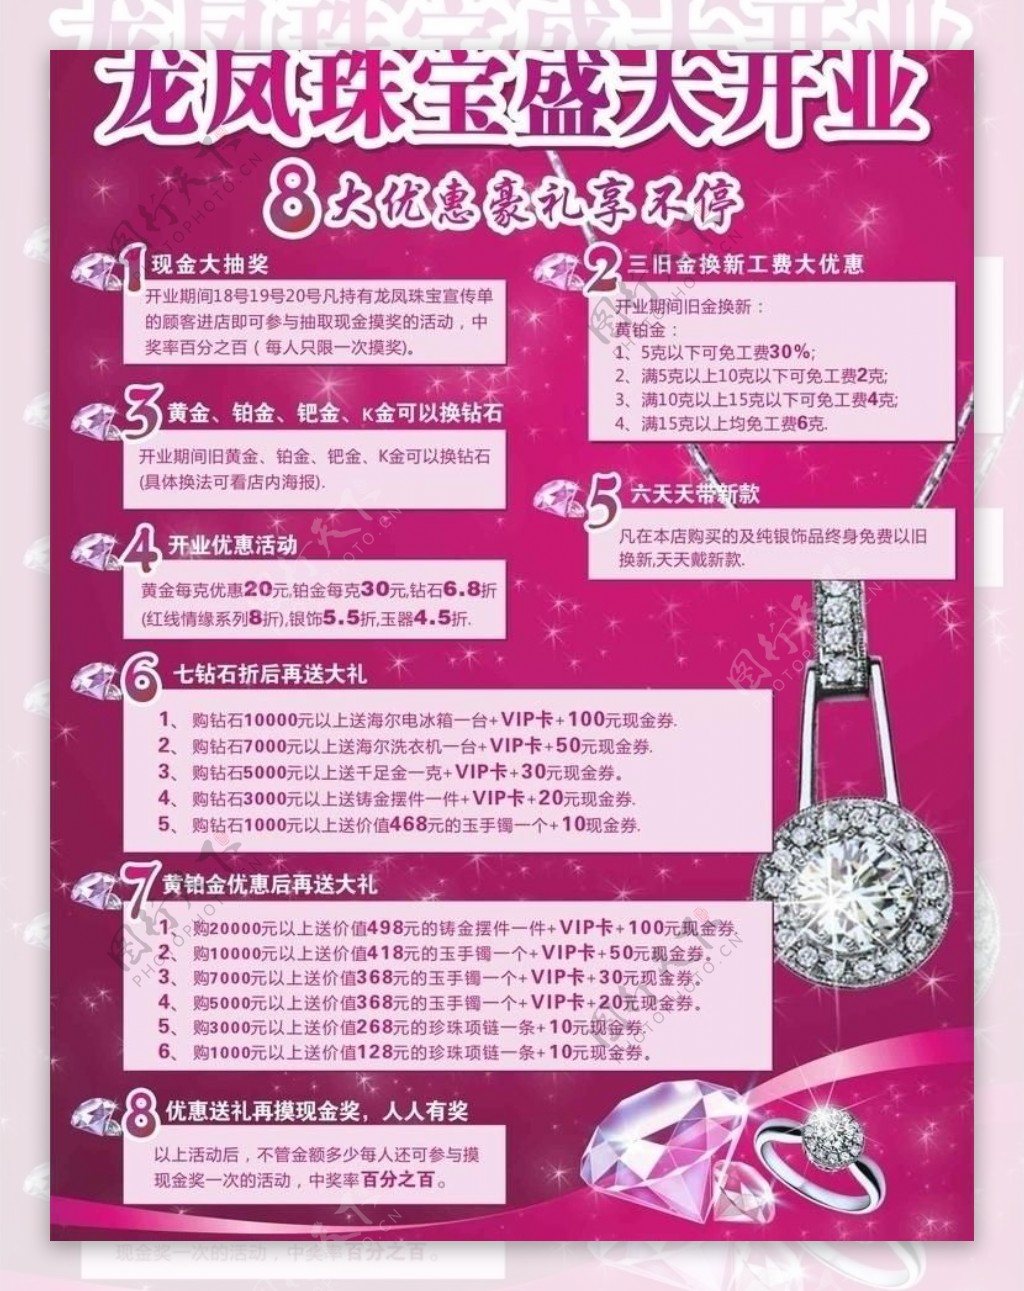 龙凤珠宝活动广告图片